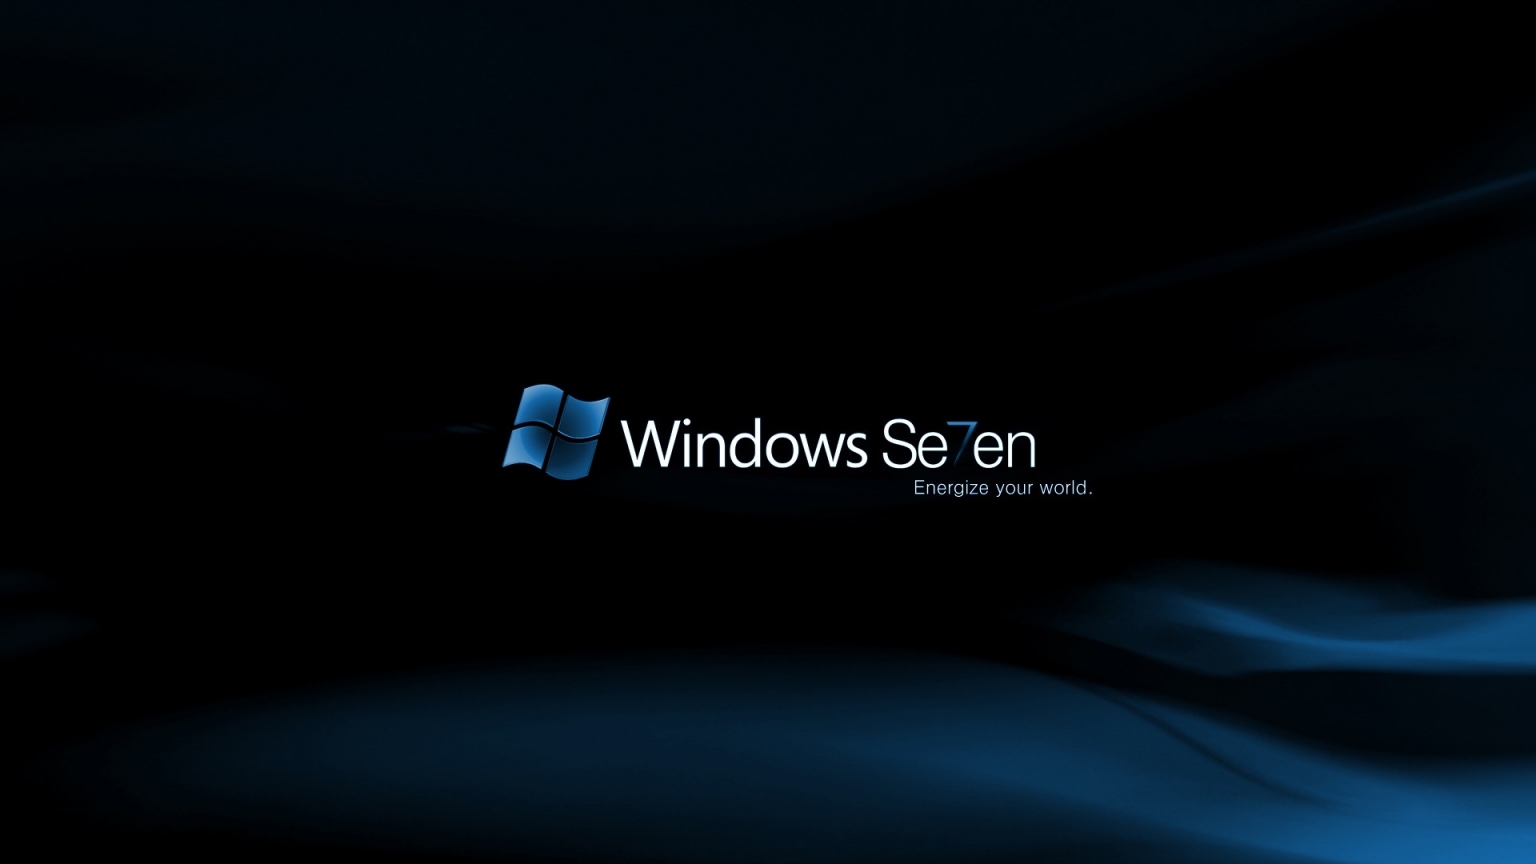 Windows Se7en Midnight for 1536 x 864 HDTV resolution